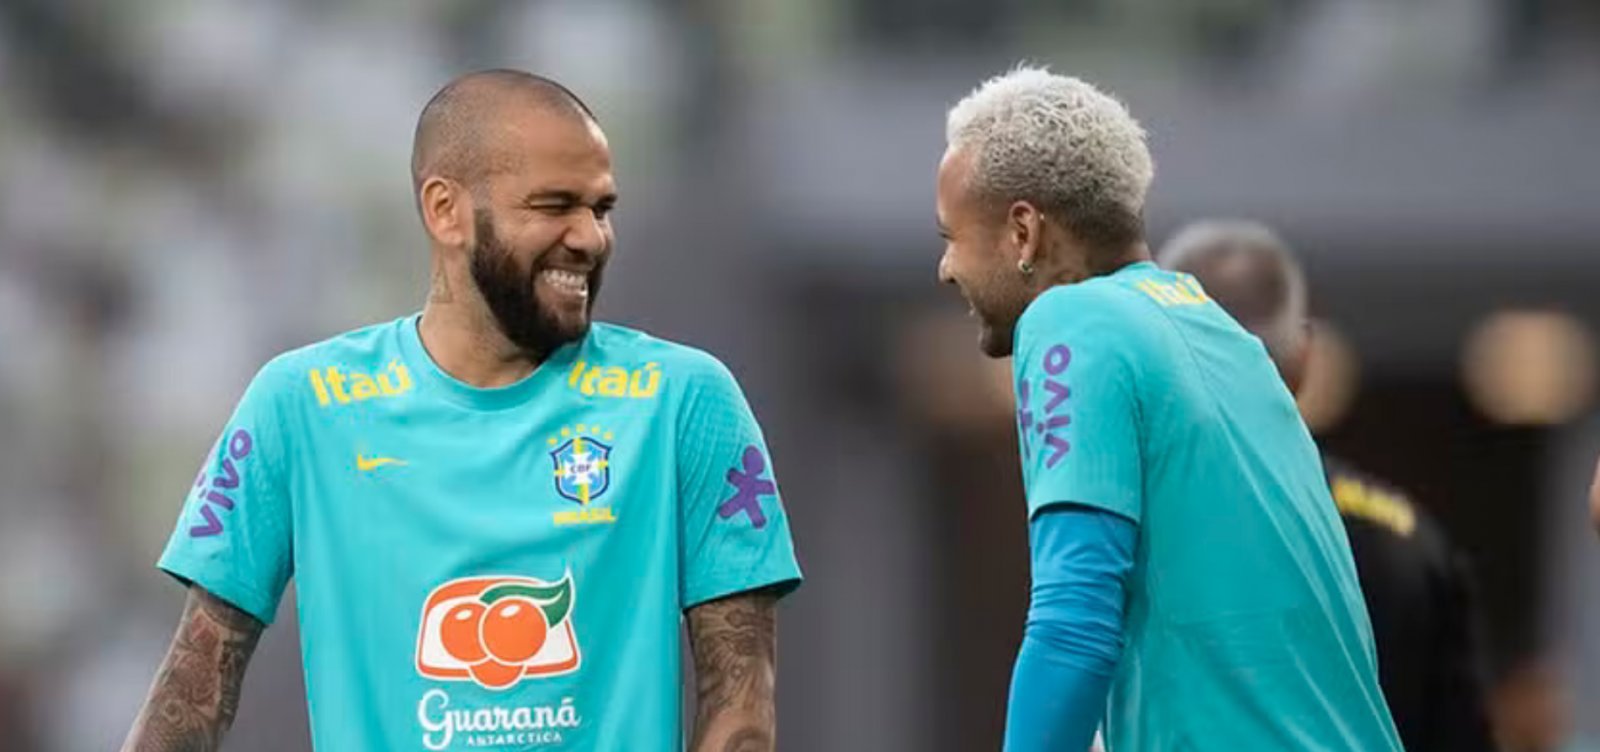 Pai de Neymar se pronuncia sobre Daniel Alves e nega pagamento de fiança: "Assunto que hoje não nos compete mais"